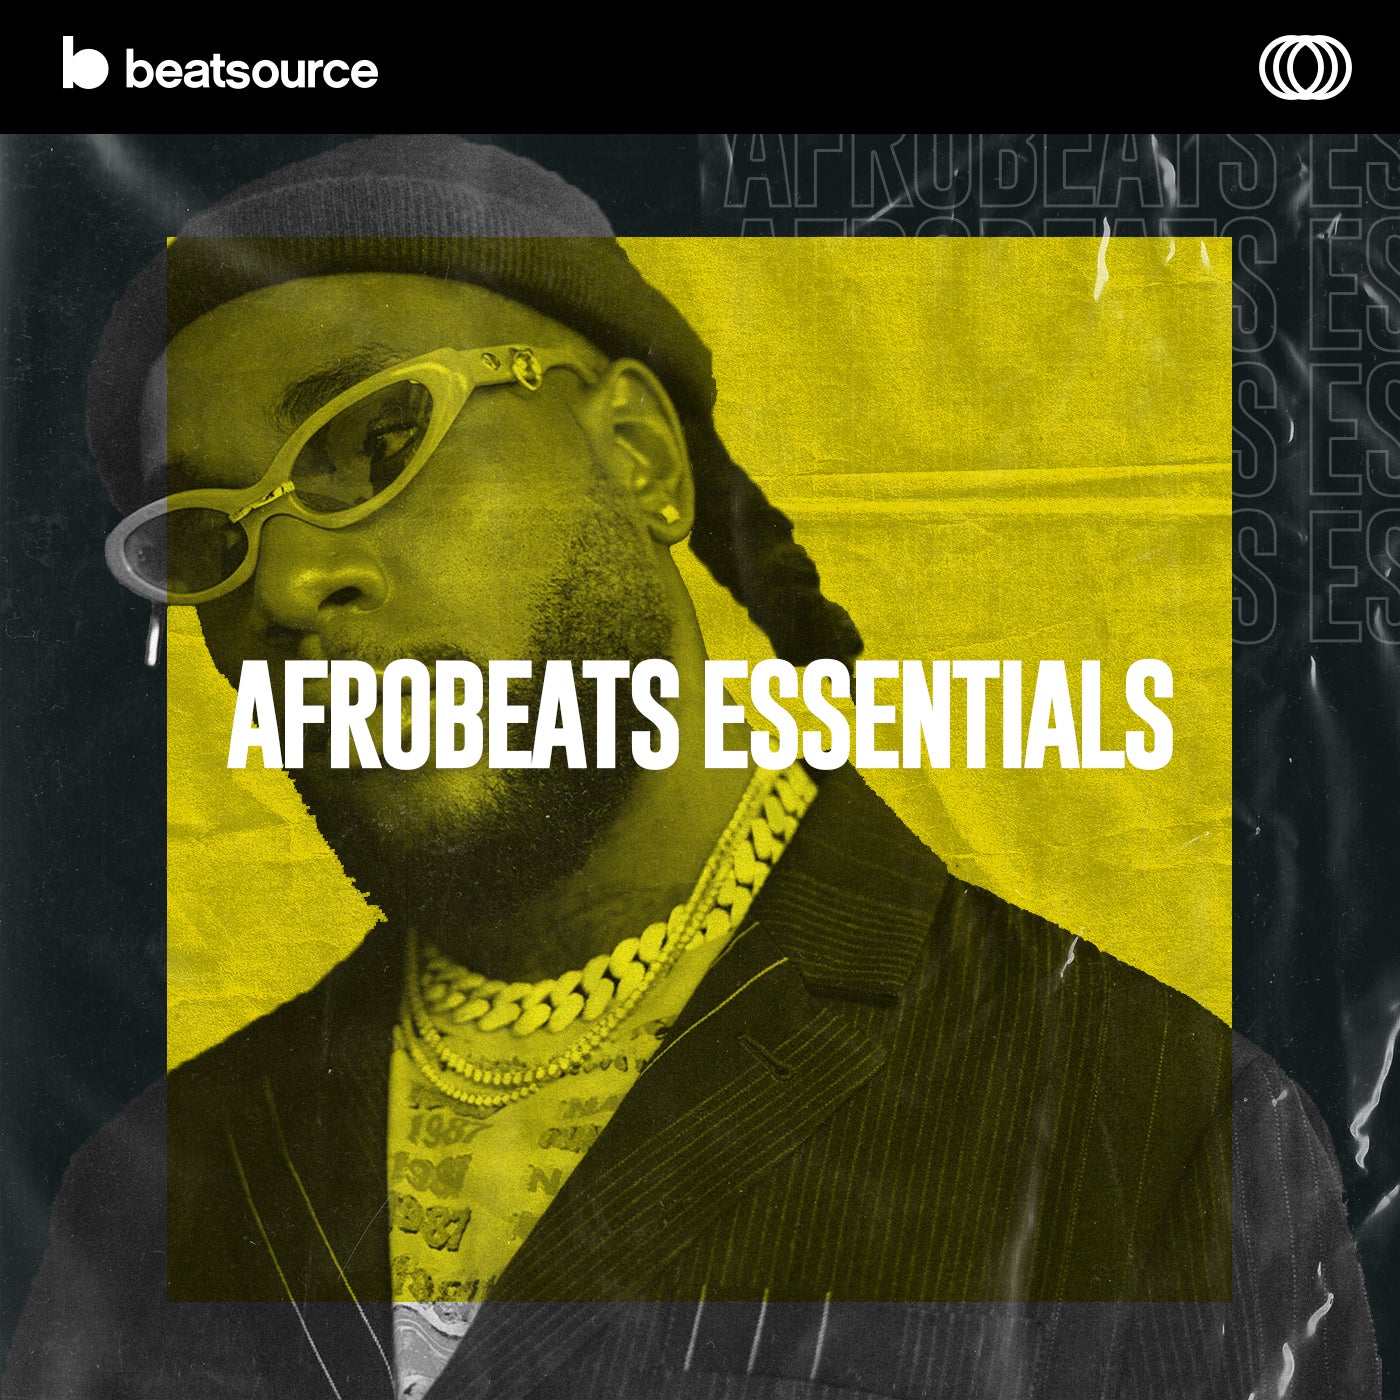 Afrobeats Essentials, a playlist for DJs.